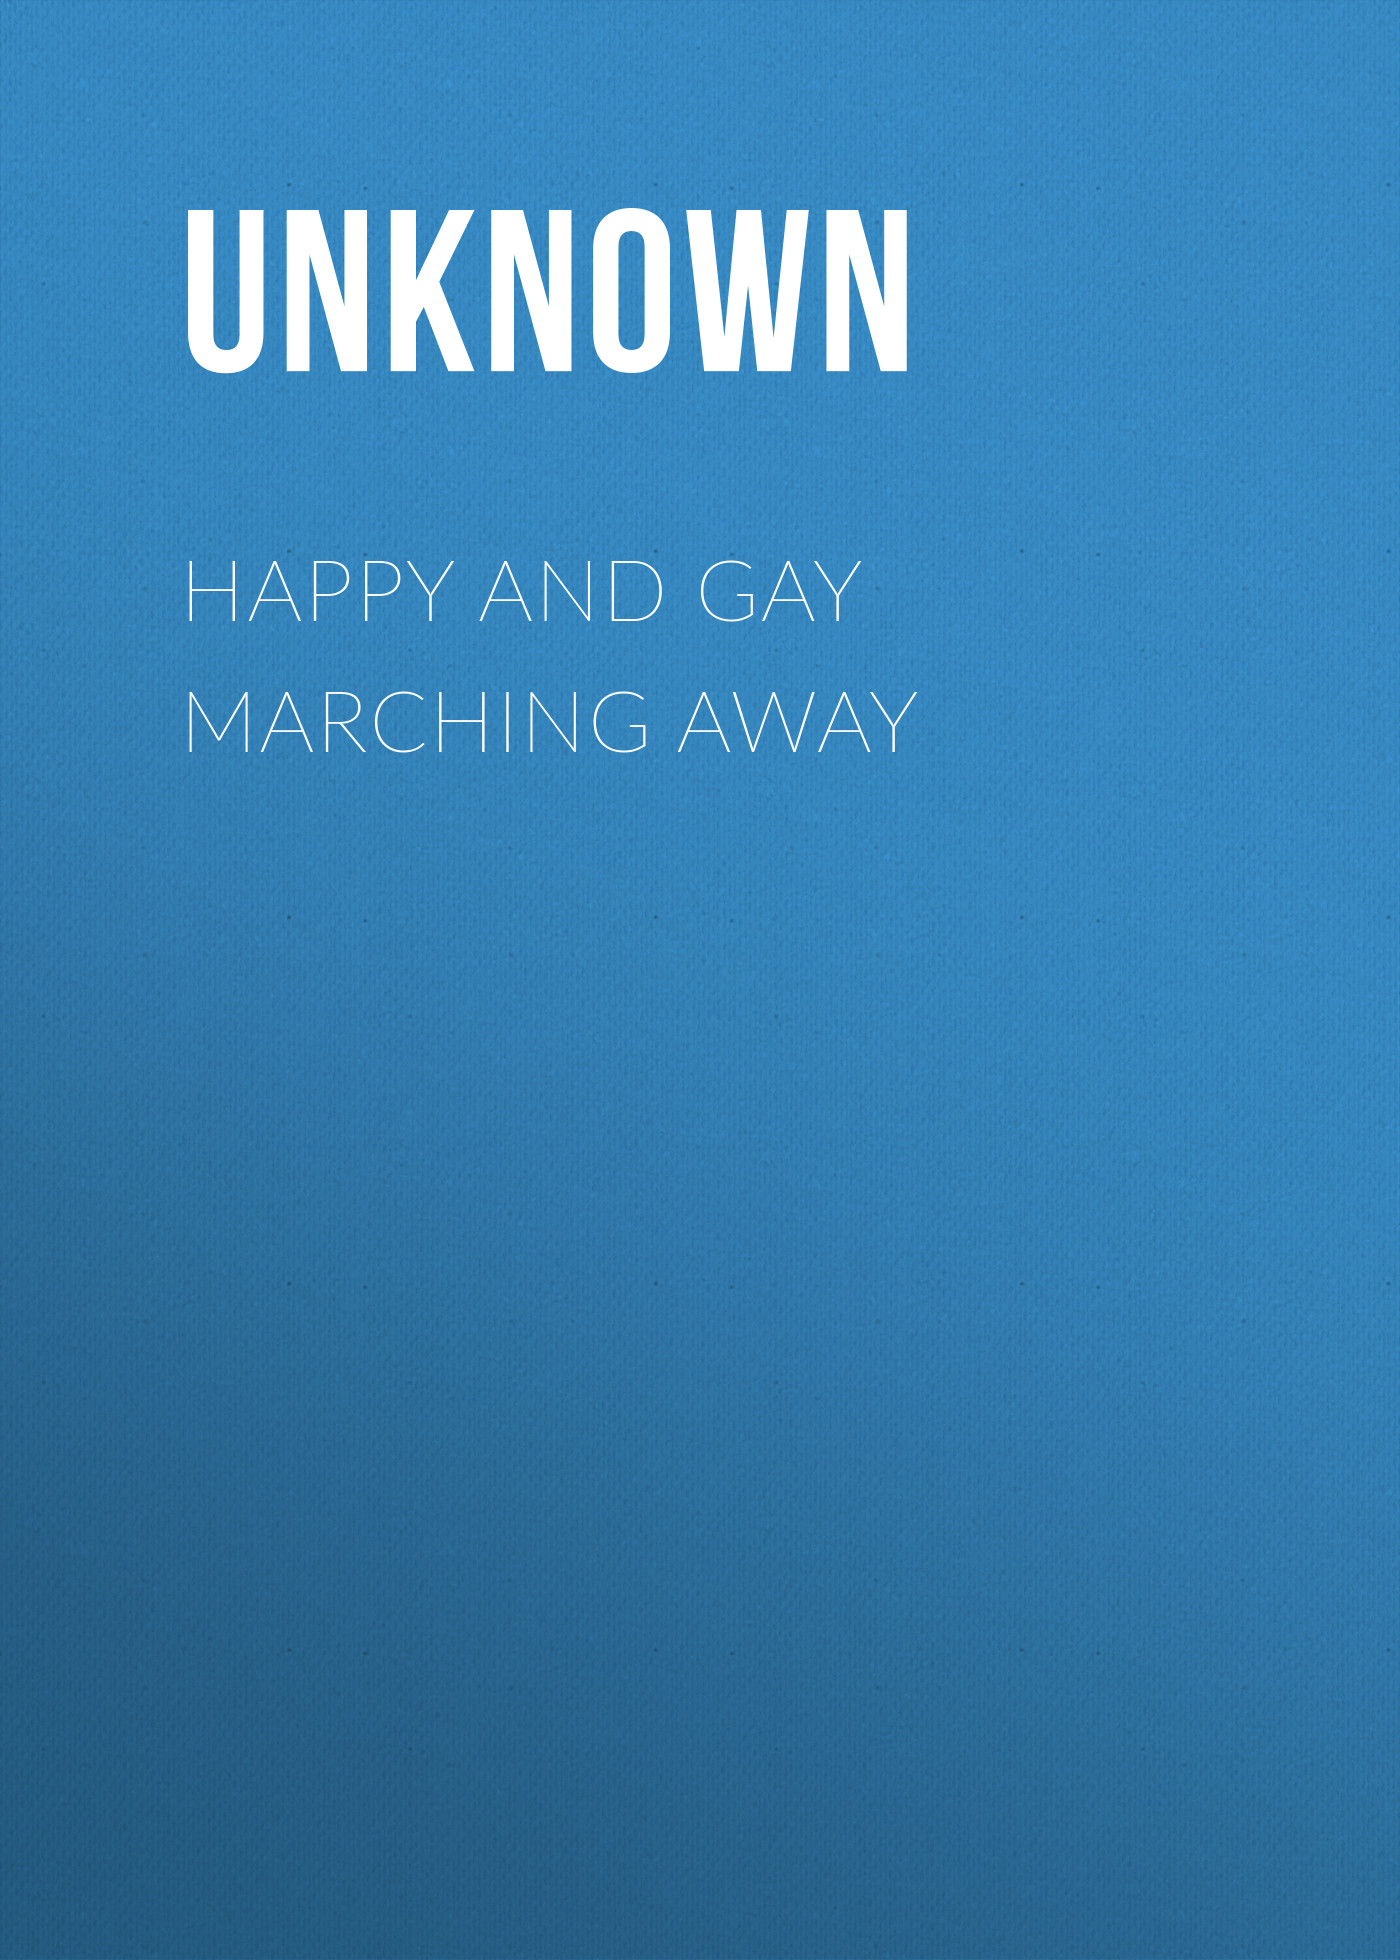 Книга Happy and Gay Marching Away из серии , созданная  Unknown, может относится к жанру Зарубежная классика, Зарубежная старинная литература. Стоимость электронной книги Happy and Gay Marching Away с идентификатором 35496215 составляет 0 руб.